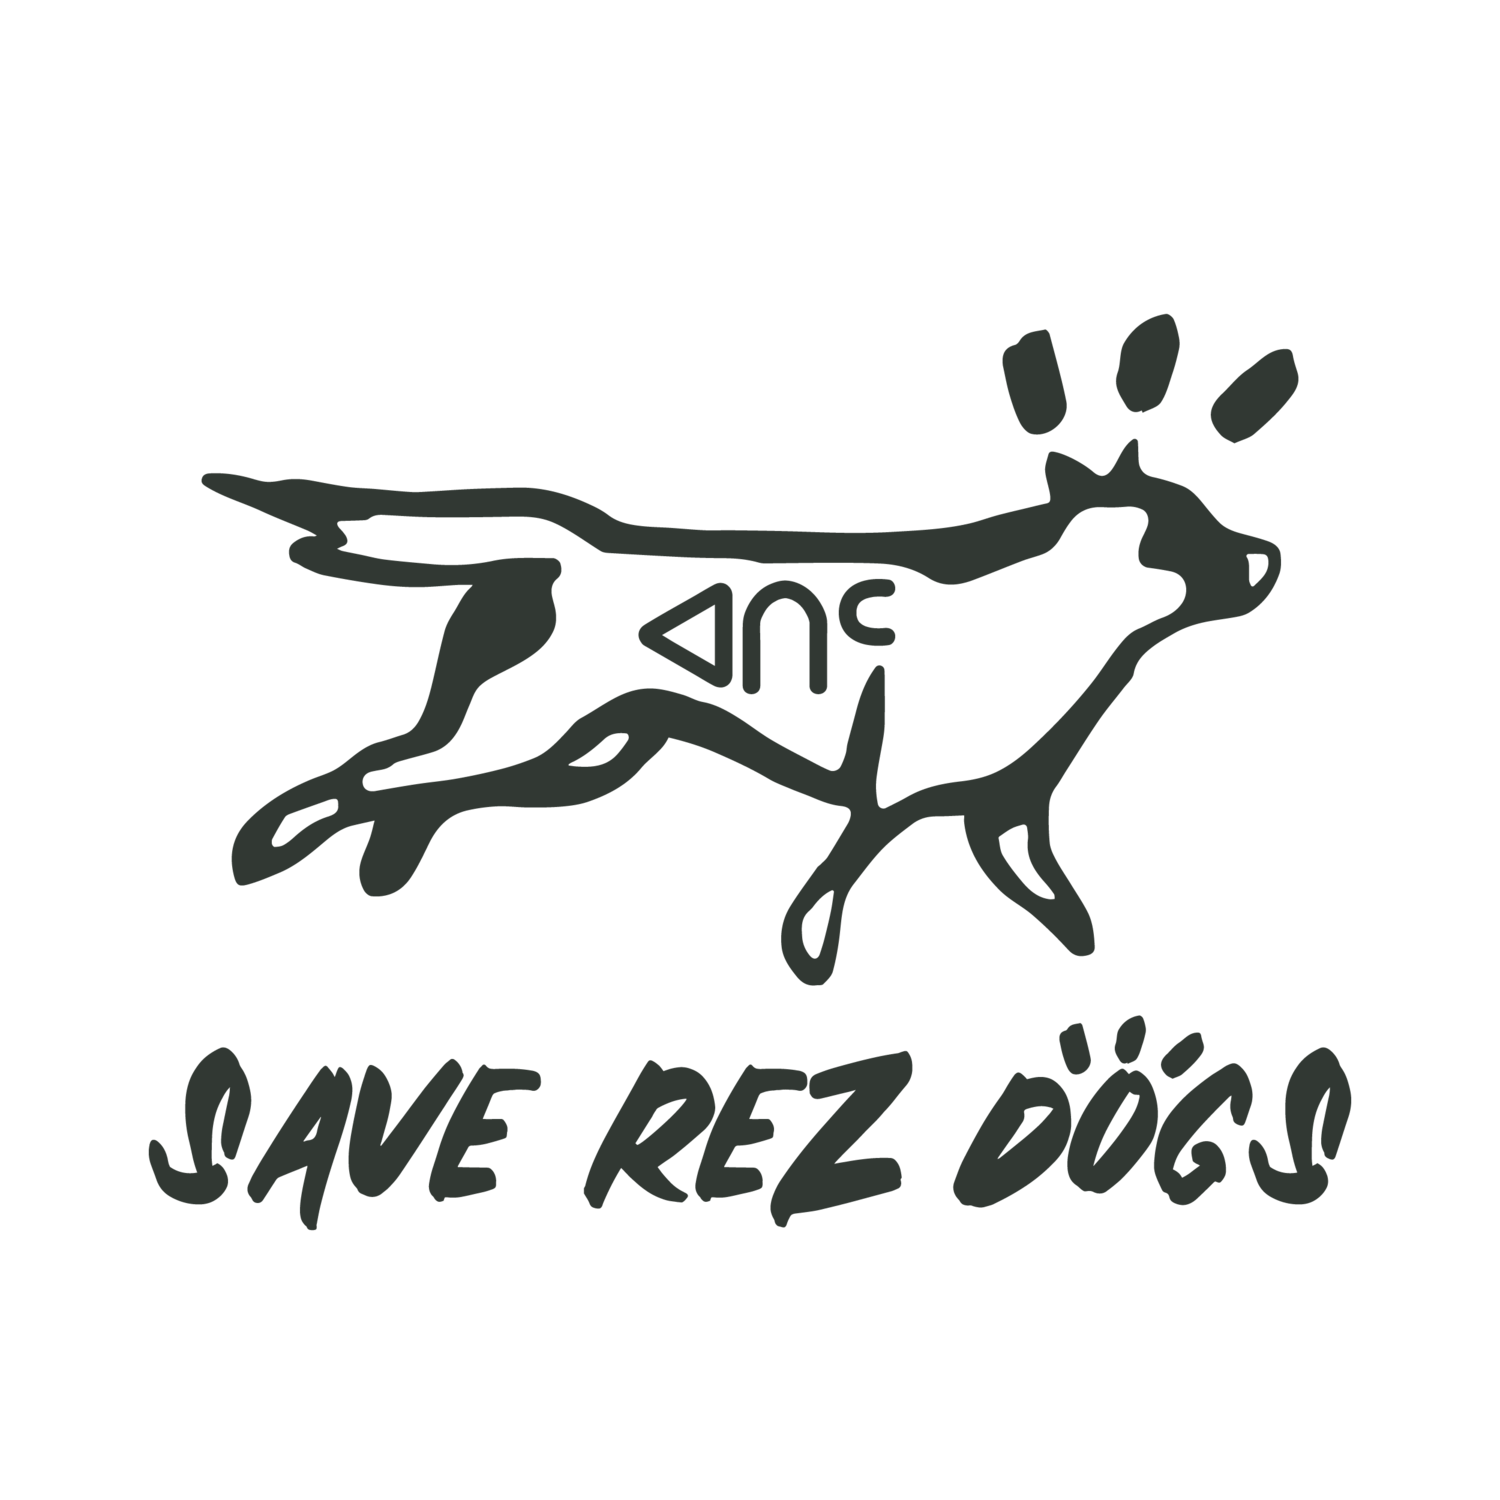 Save Rez Dogs